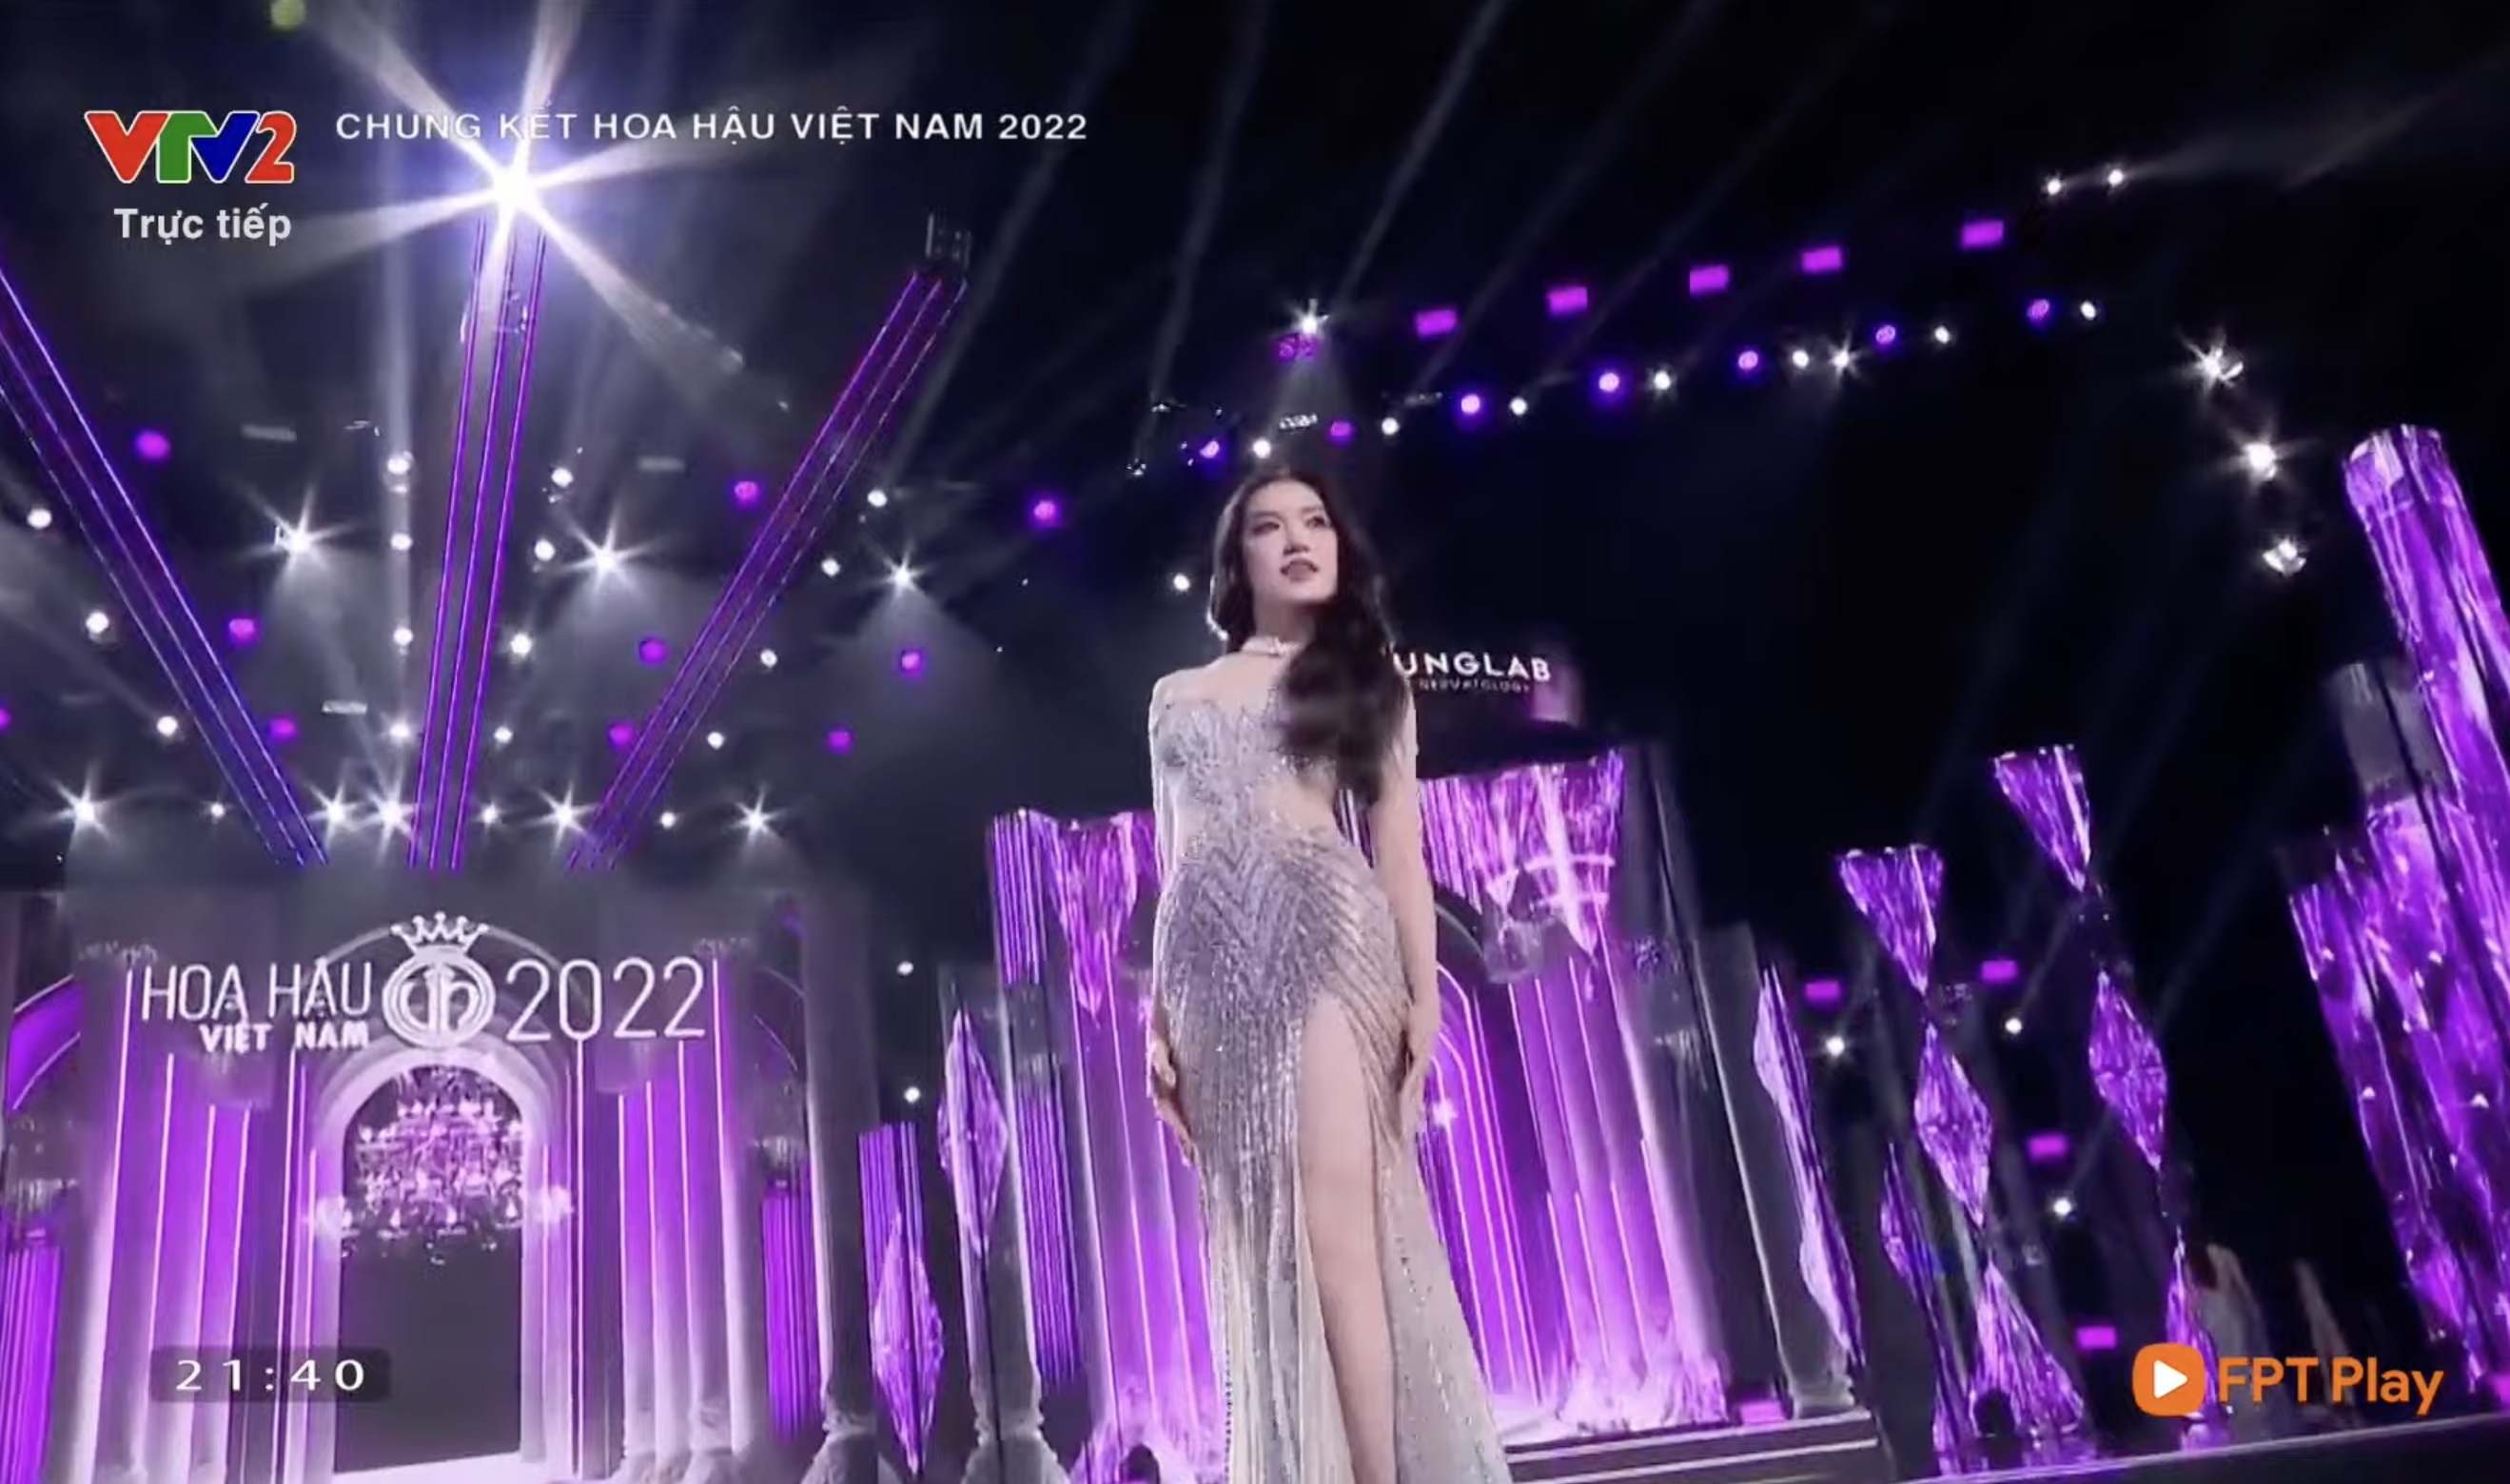 Chung kết Hoa hậu Việt Nam 2022: Tân Hoa hậu chính thức gọi tên Huỳnh Thị Thanh Thuỷ - 33